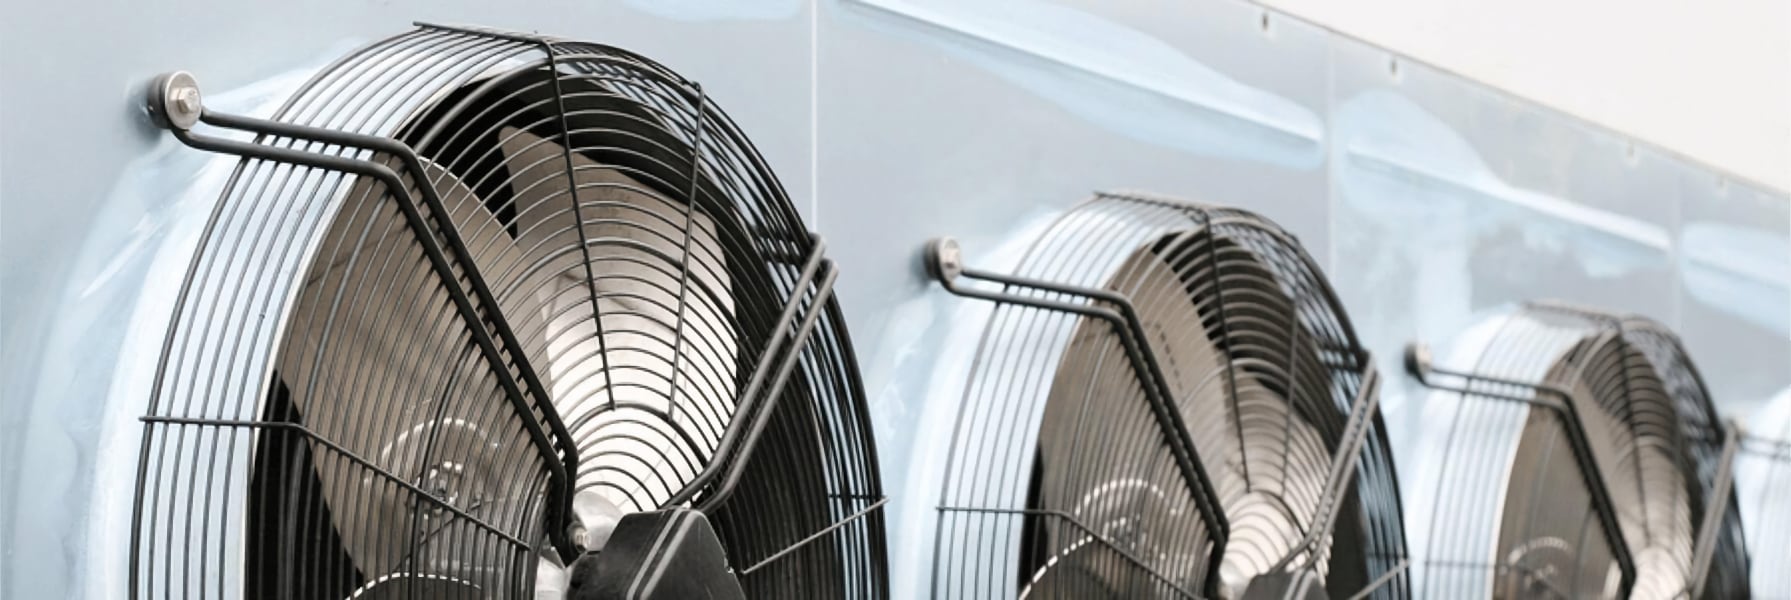 Як підібрати канальний вентилятор для вентиляційної системи